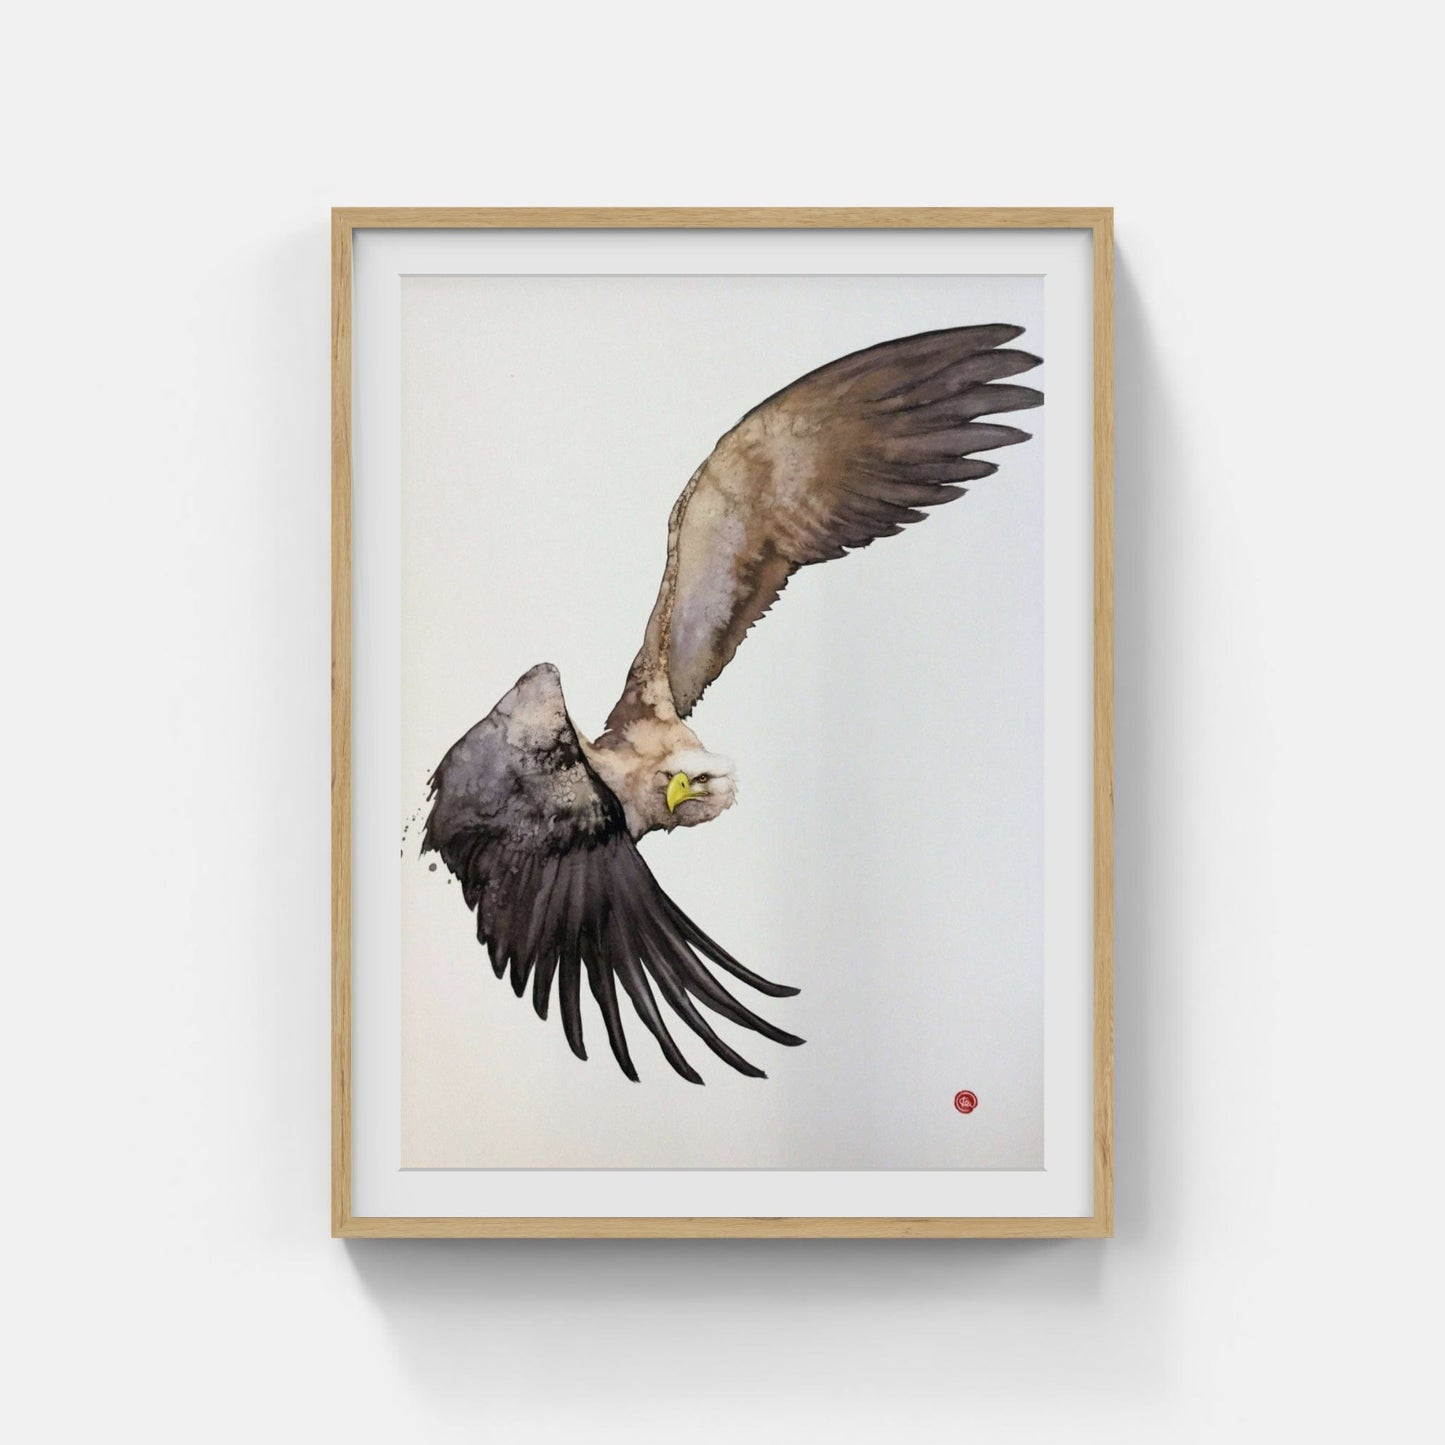 Karl Mårtens - Sea eagle